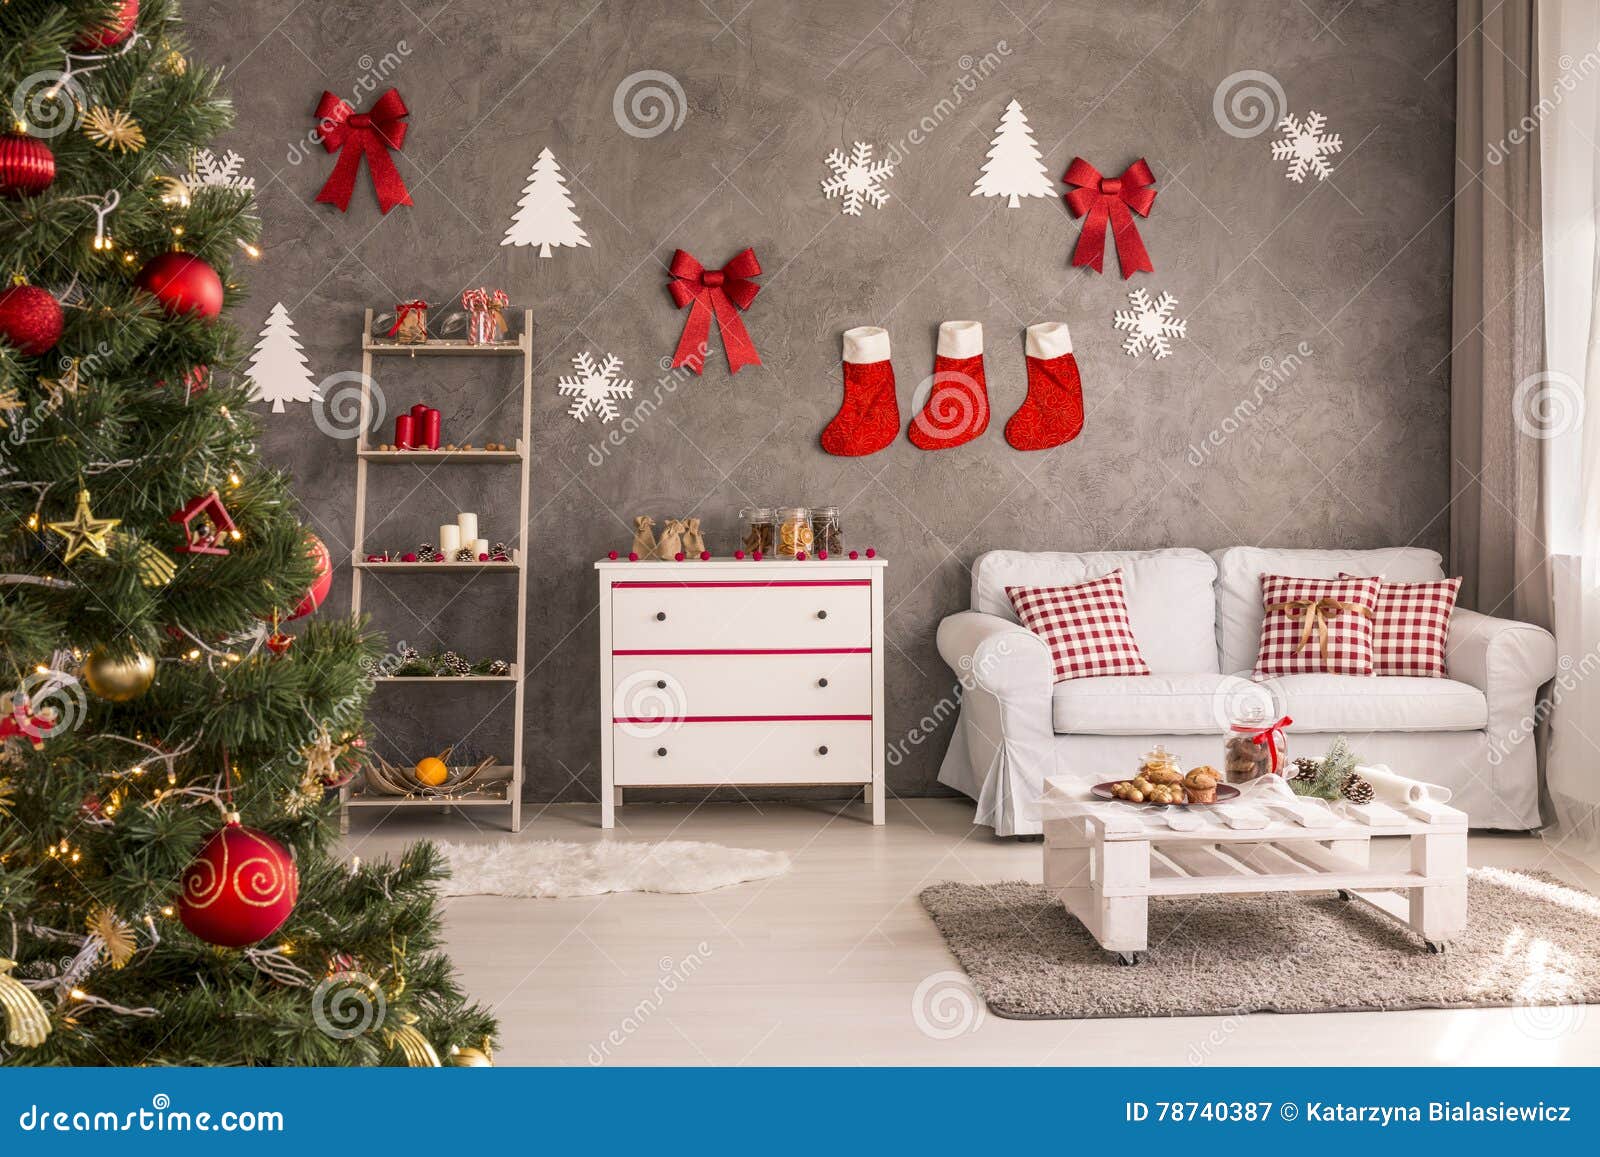 Sala Com a árvore De Natal Decorada Imagem de Stock - Imagem de casa,  dezembro: 78740387